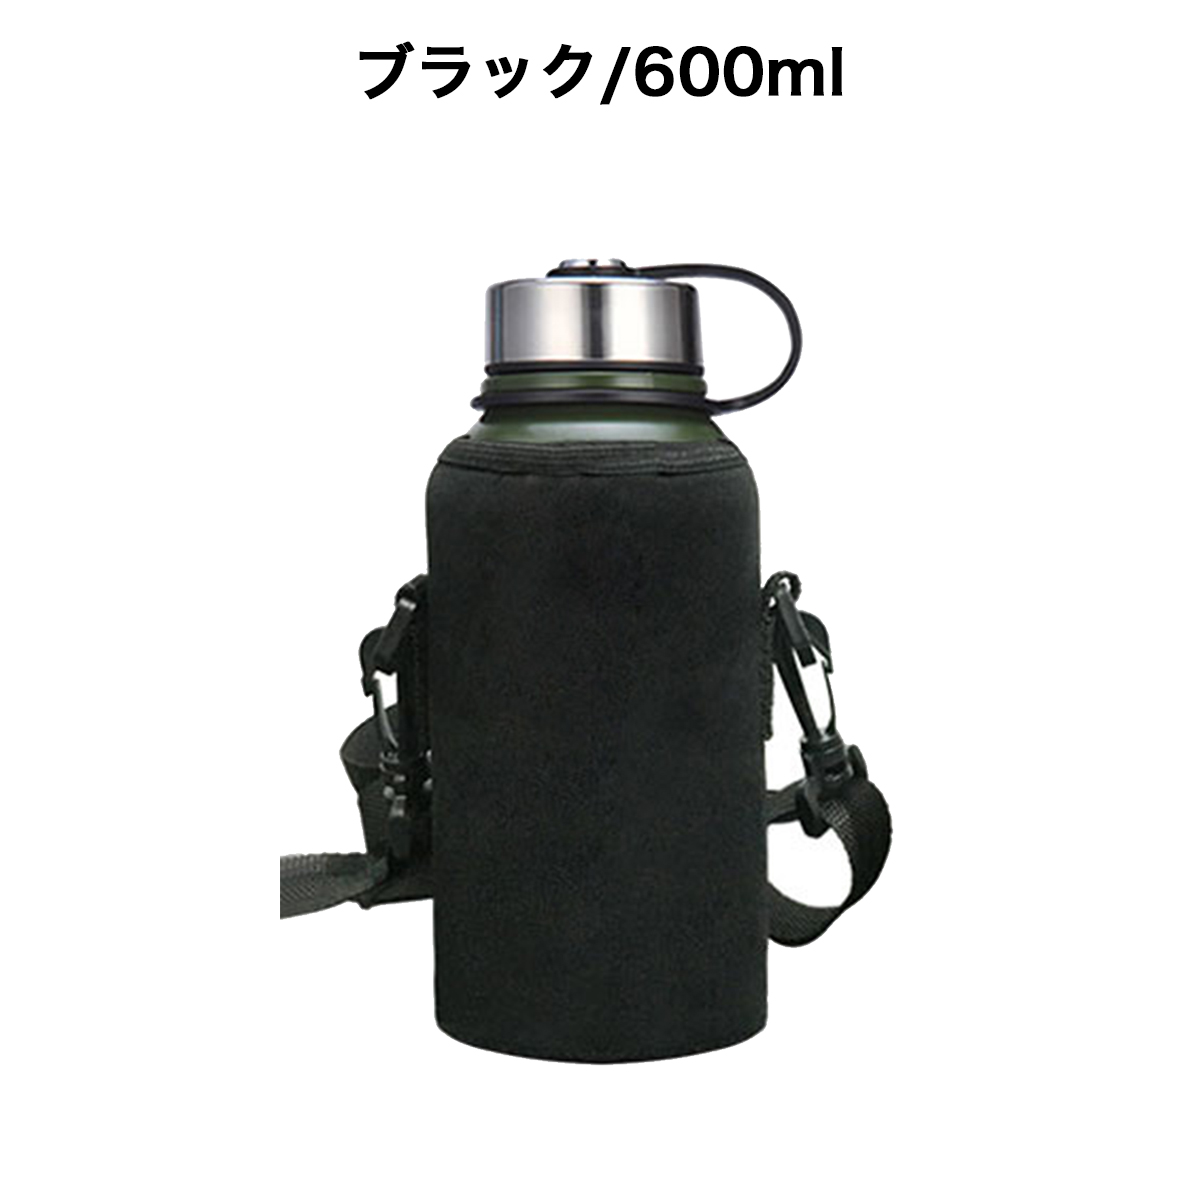 ボトルカバー 水筒カバー ブラック 600ml アウトドア 遠足 スポーツ 通販